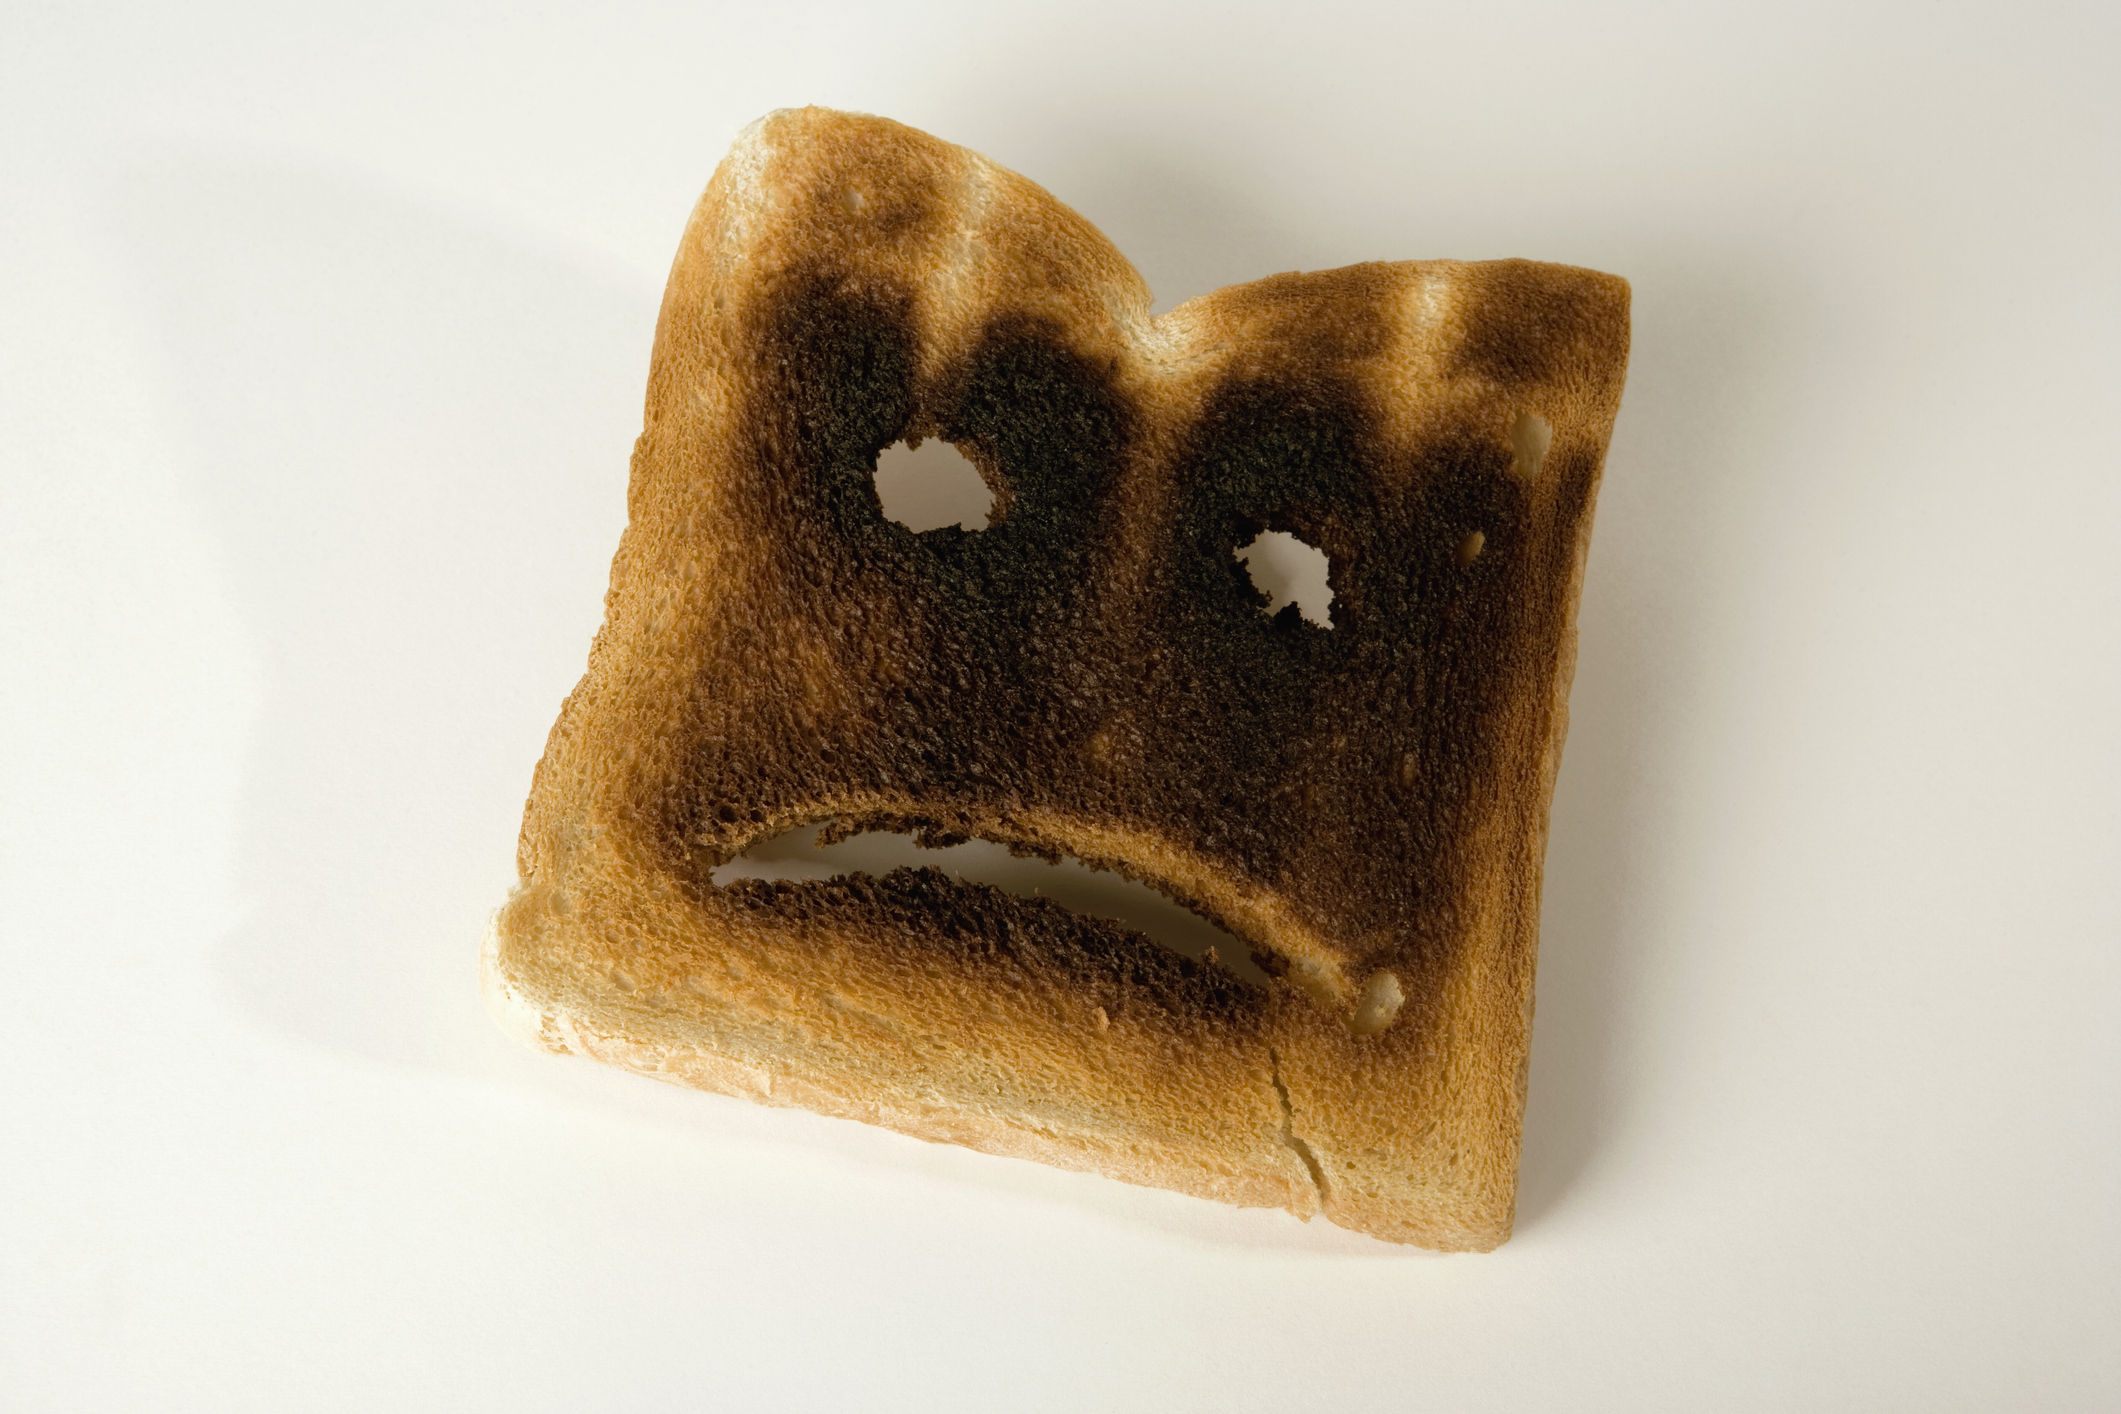 Plátek spáleného toastu se smutným obličejem;  pracovněprávní chyby